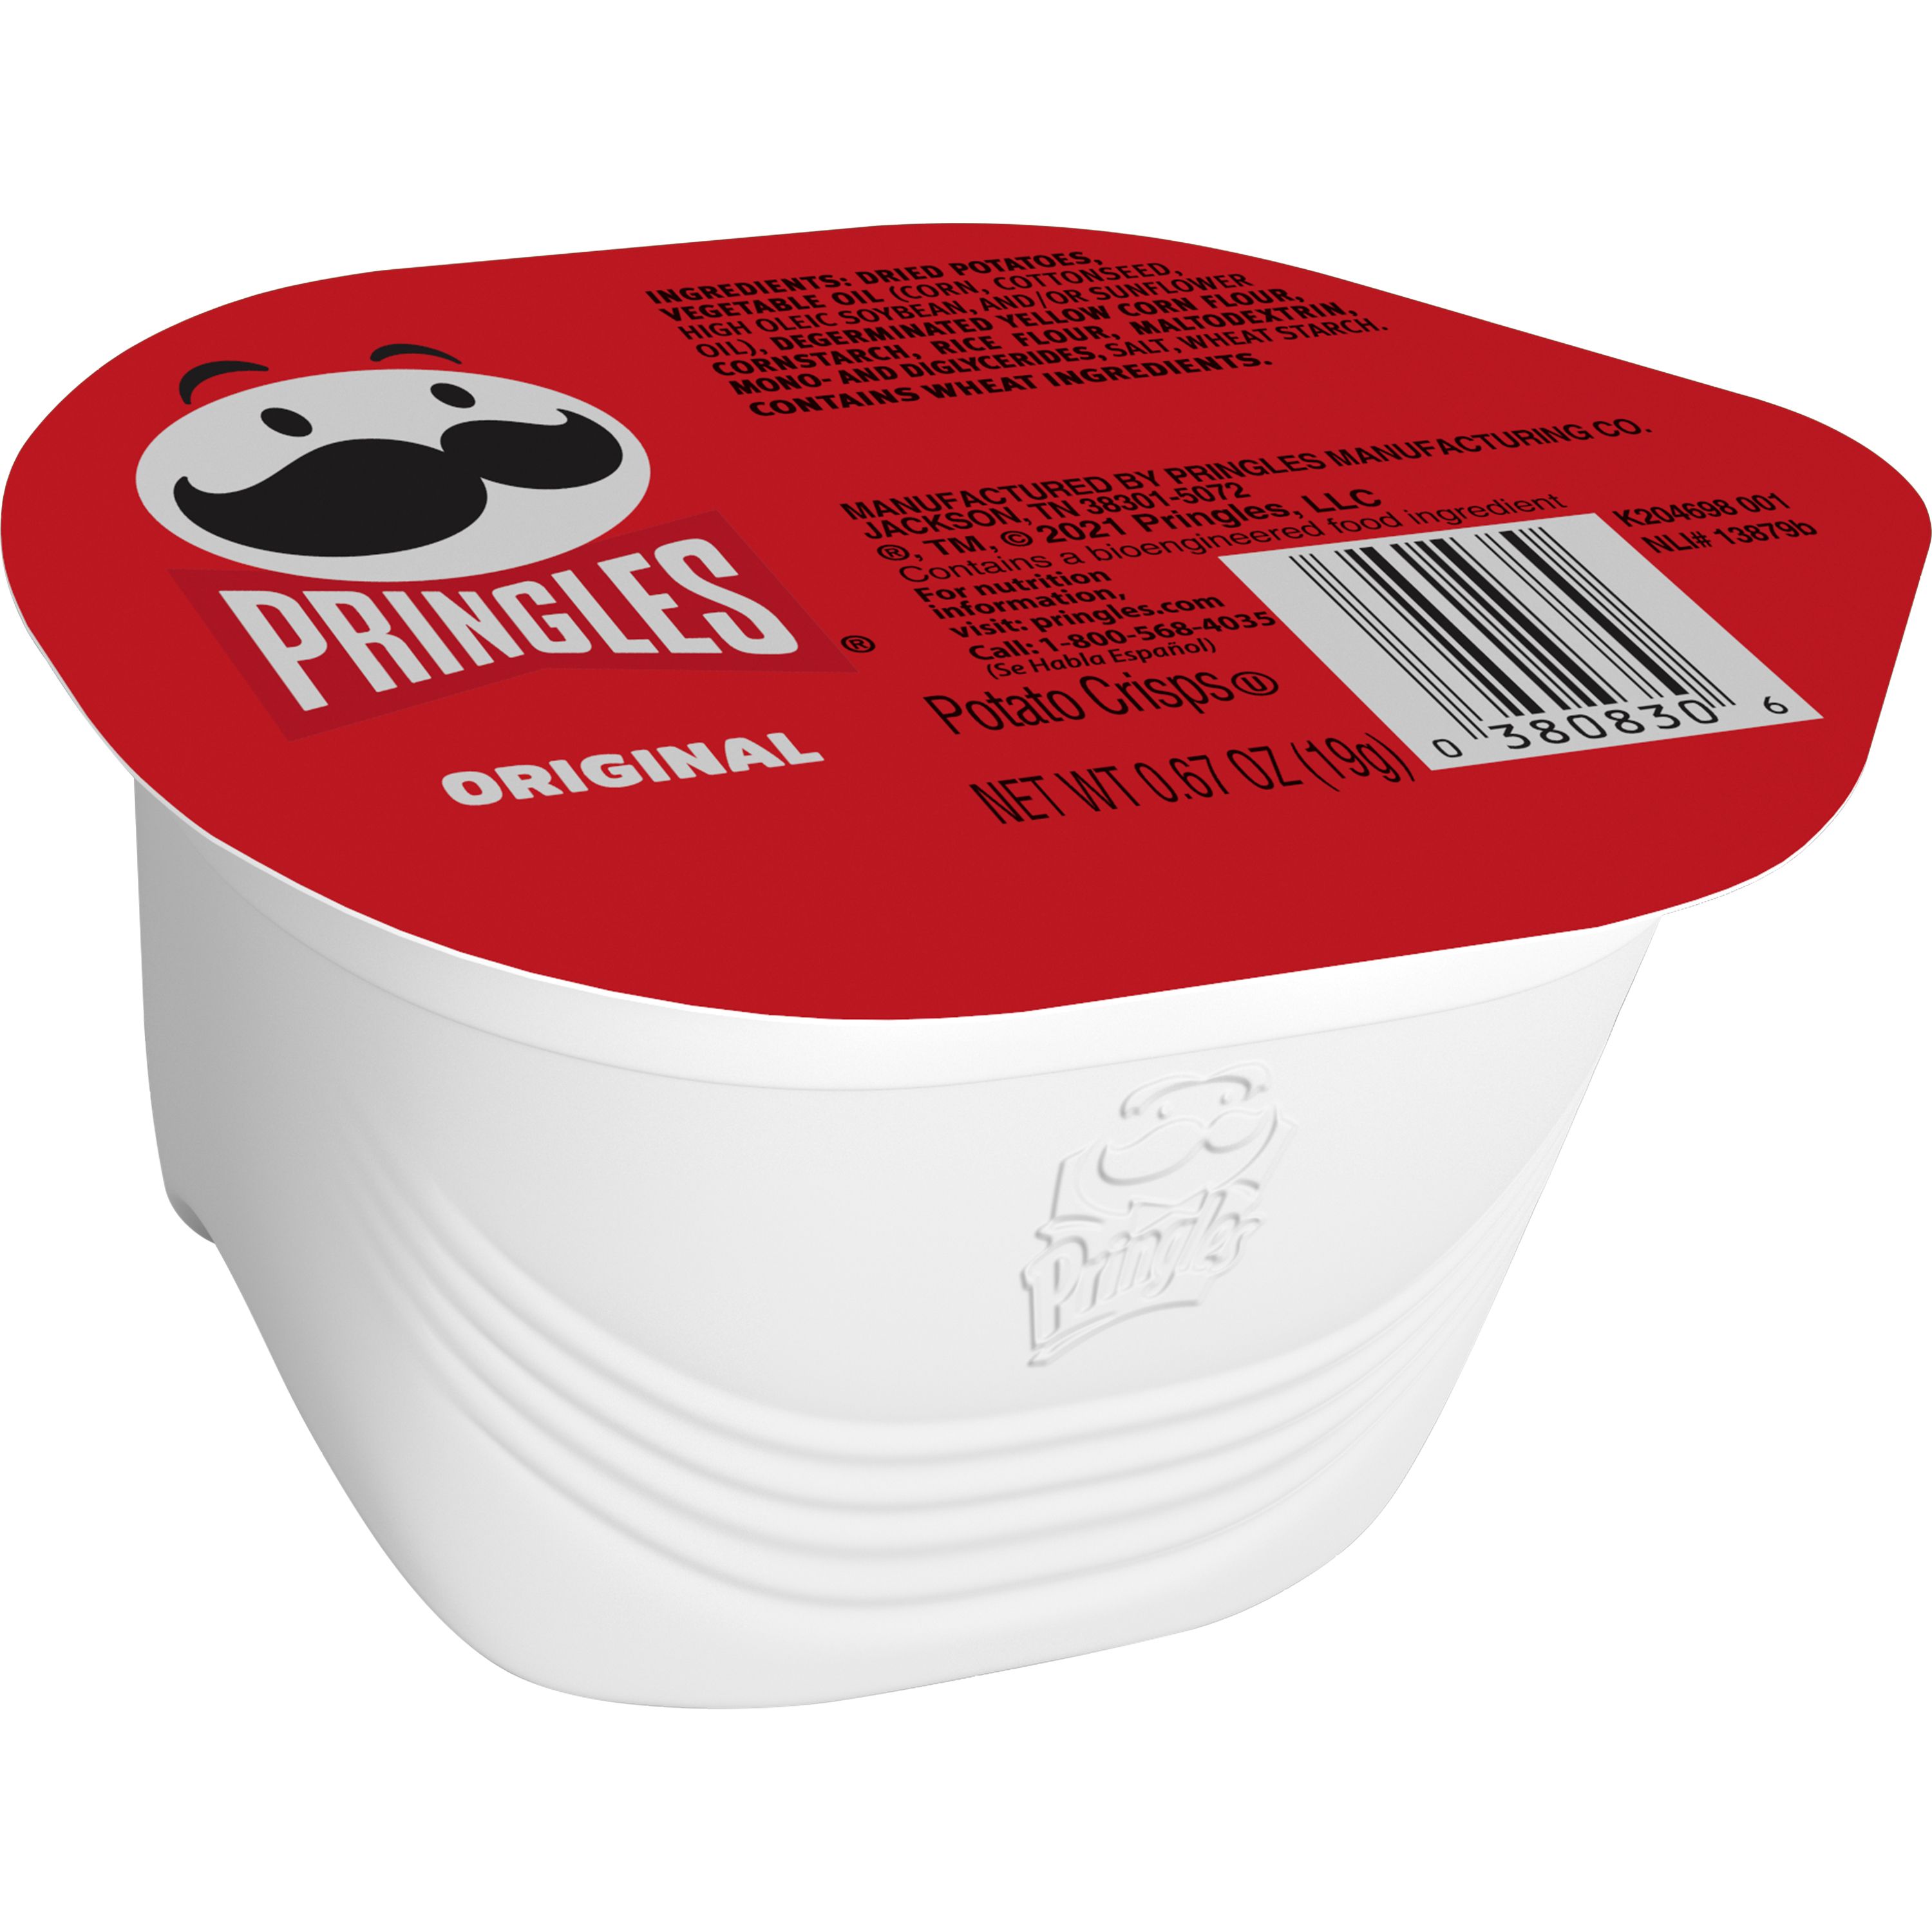 Pringles® Snack Stacks Original Crisps - SmartLabel™